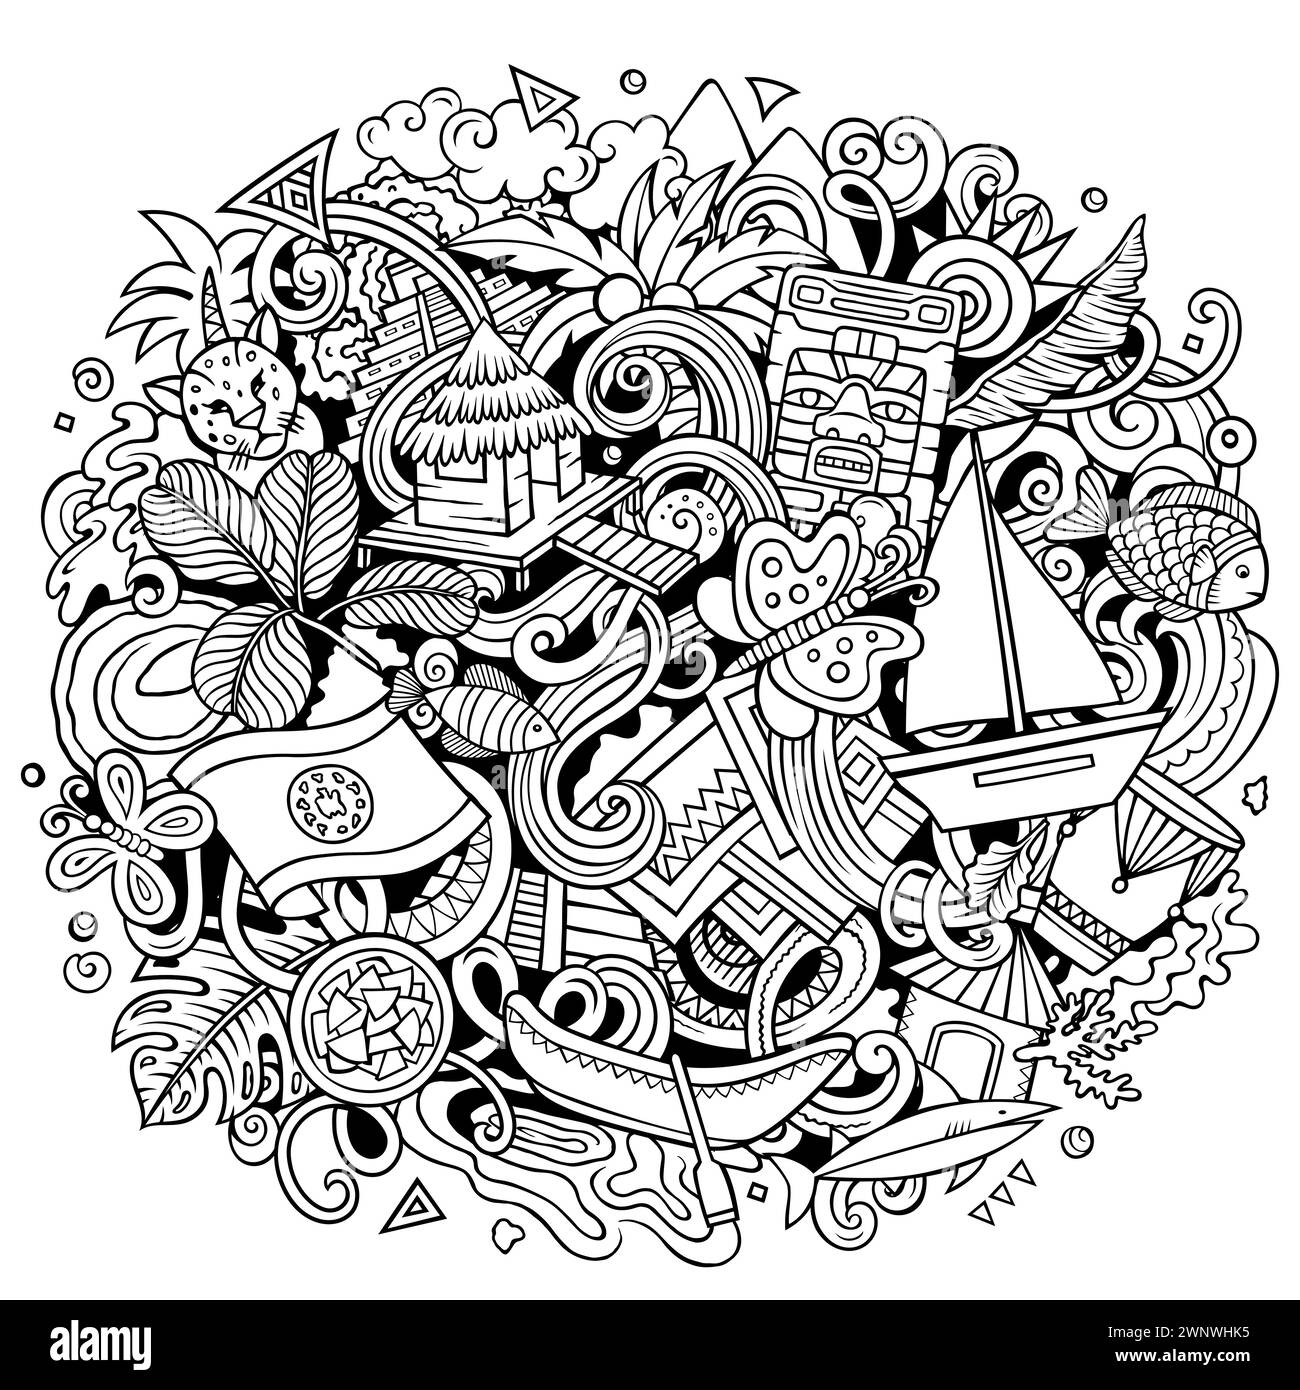 Illustration drôle de doodle vectorielle avec le thème Belize. Design dynamique et accrocheur, capturant l'essence de la culture et des traditions de l'Amérique centrale Illustration de Vecteur